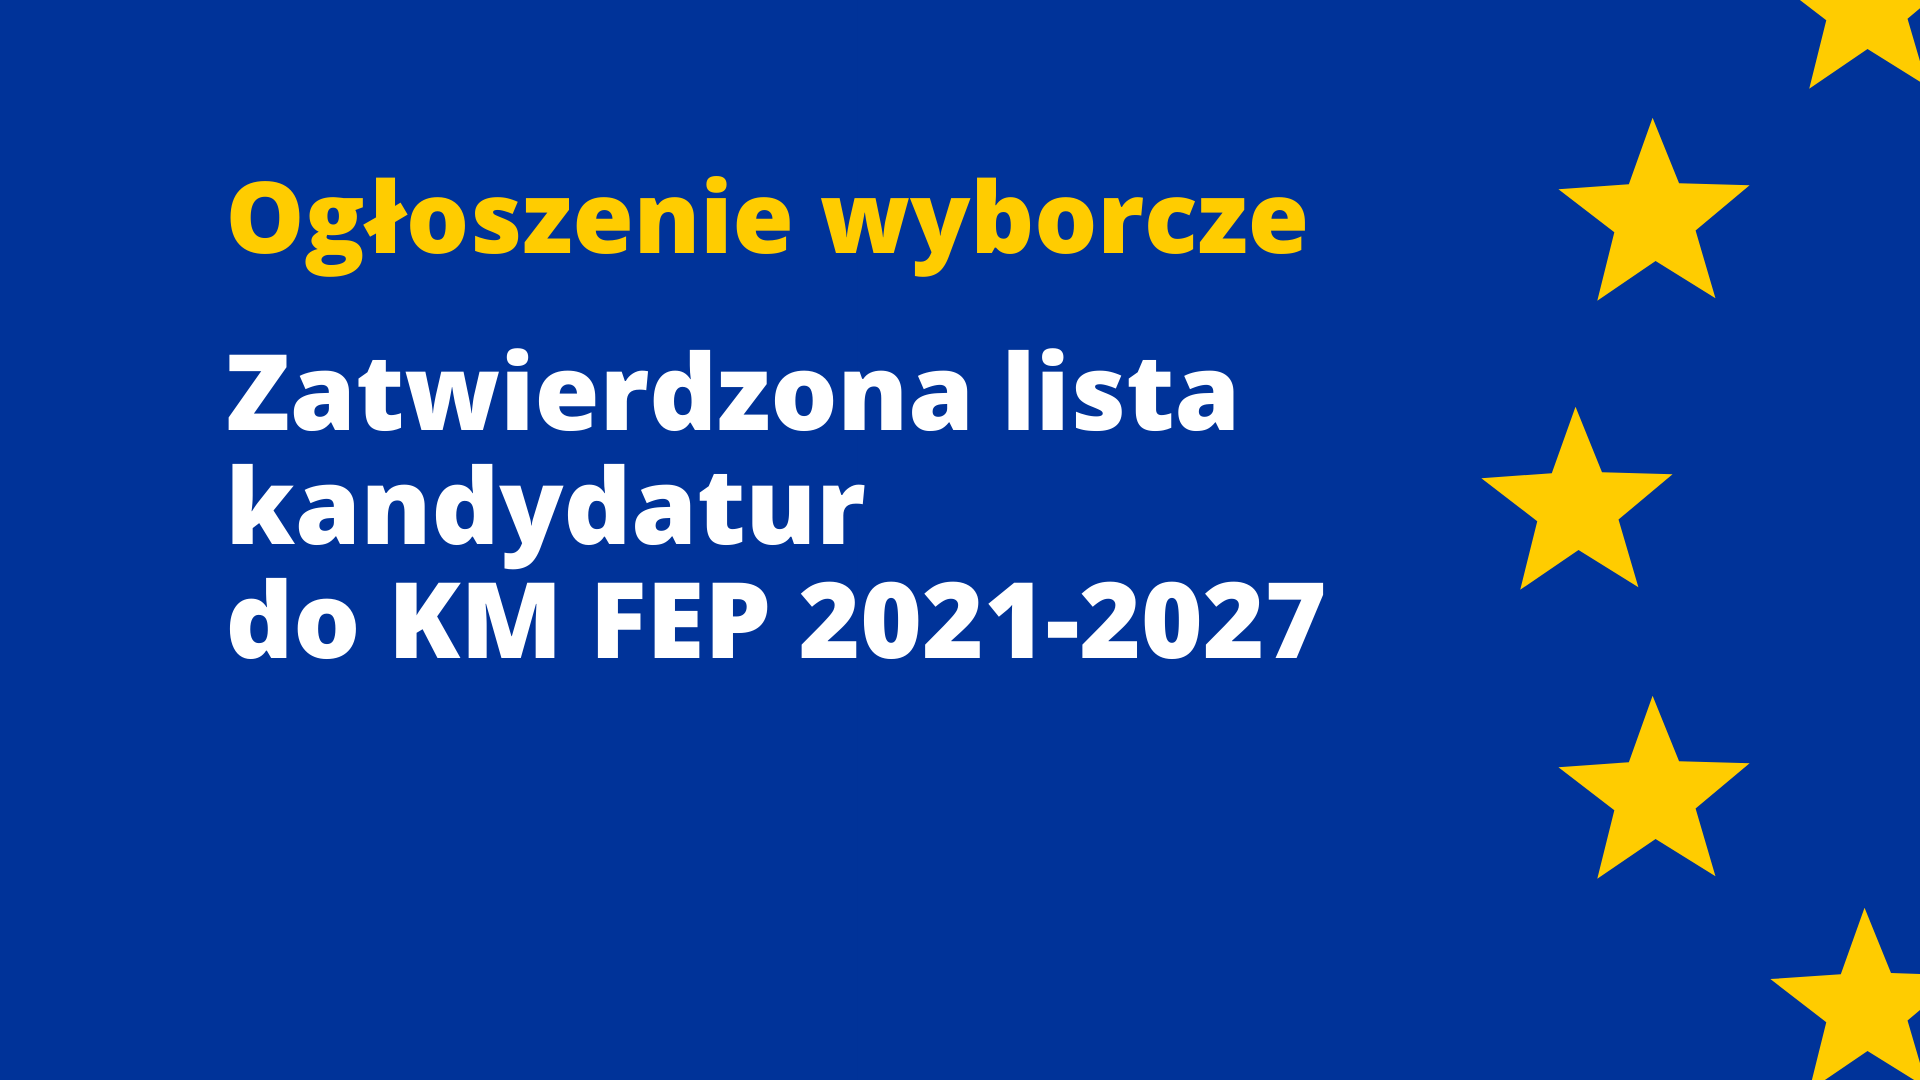 Ogłoszenie wyborcze: zatwierdzona lista kandydatur do KM FEP 2021-2027